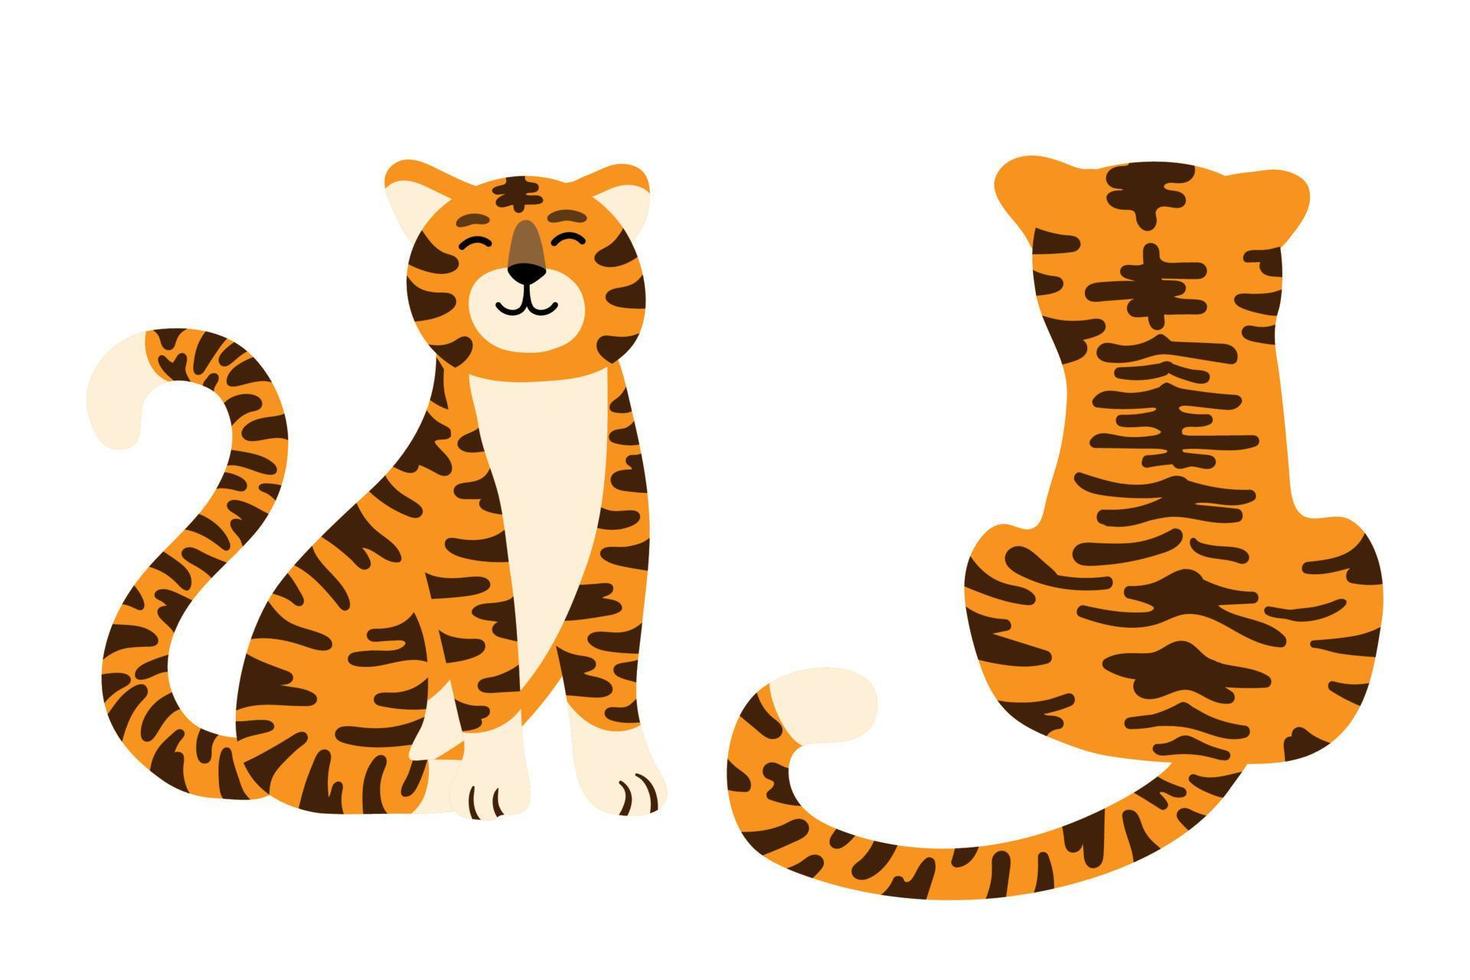 ensemble de tigres de dessin animé mignon dans différentes poses illustration vectorielle isolée. symbole des vacances chinoises, caractère du nouvel an 2022. thème faune et flore, jungle de chat, mascotte de mammifère sauvage vecteur